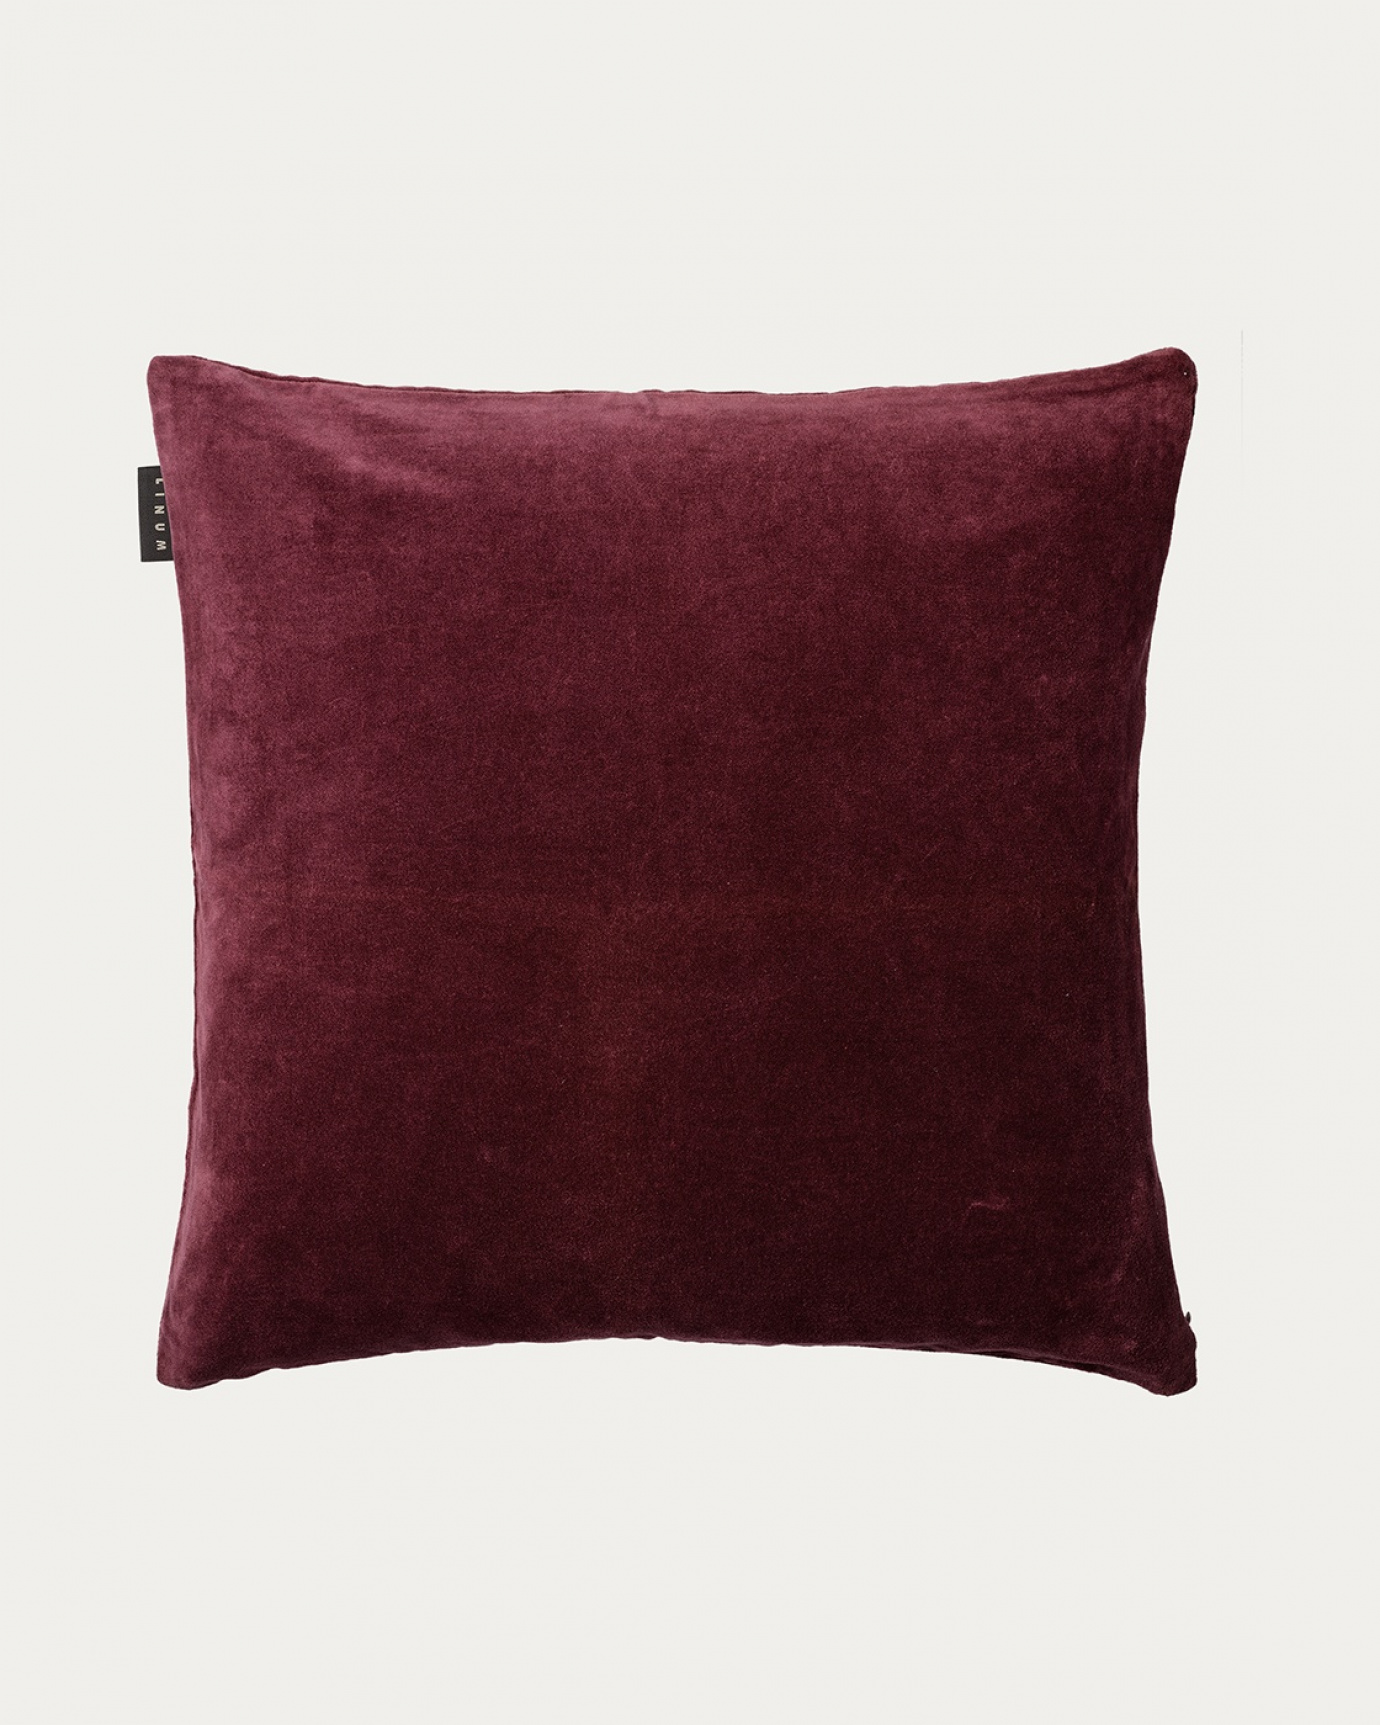 Produktbild dunkles burgunderrot PAOLO Kissenhülle aus weichem Baumwollsamt von LINUM DESIGN. Größe 50x50 cm.